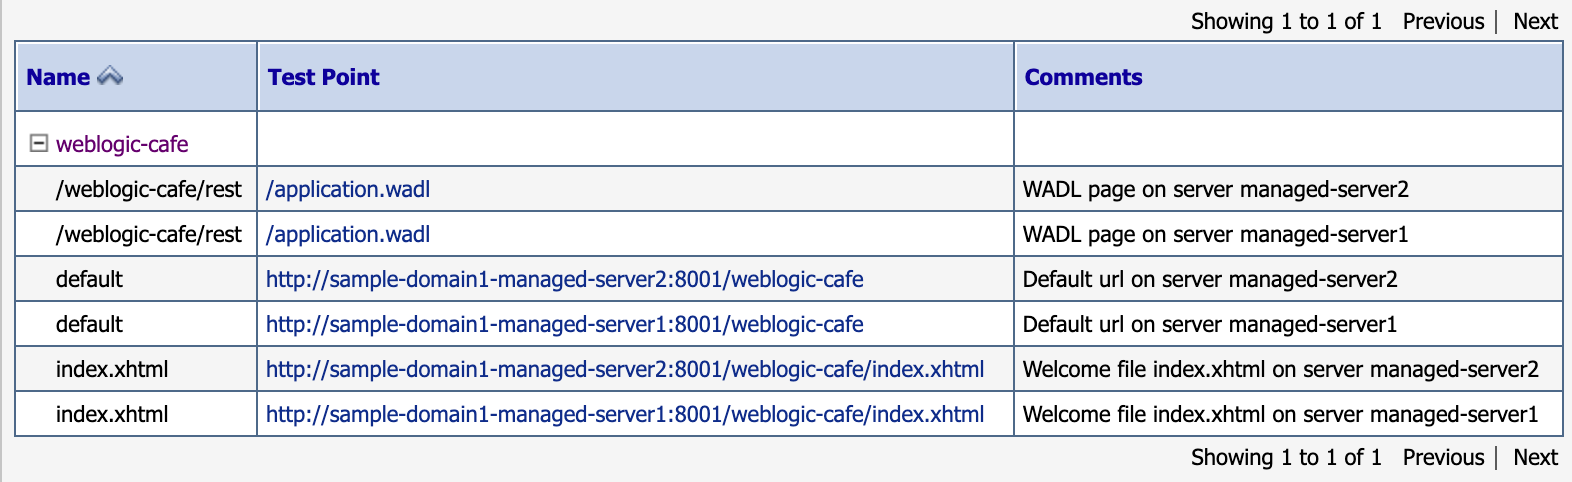 Skärmbild av weblogic-café testpunkter.